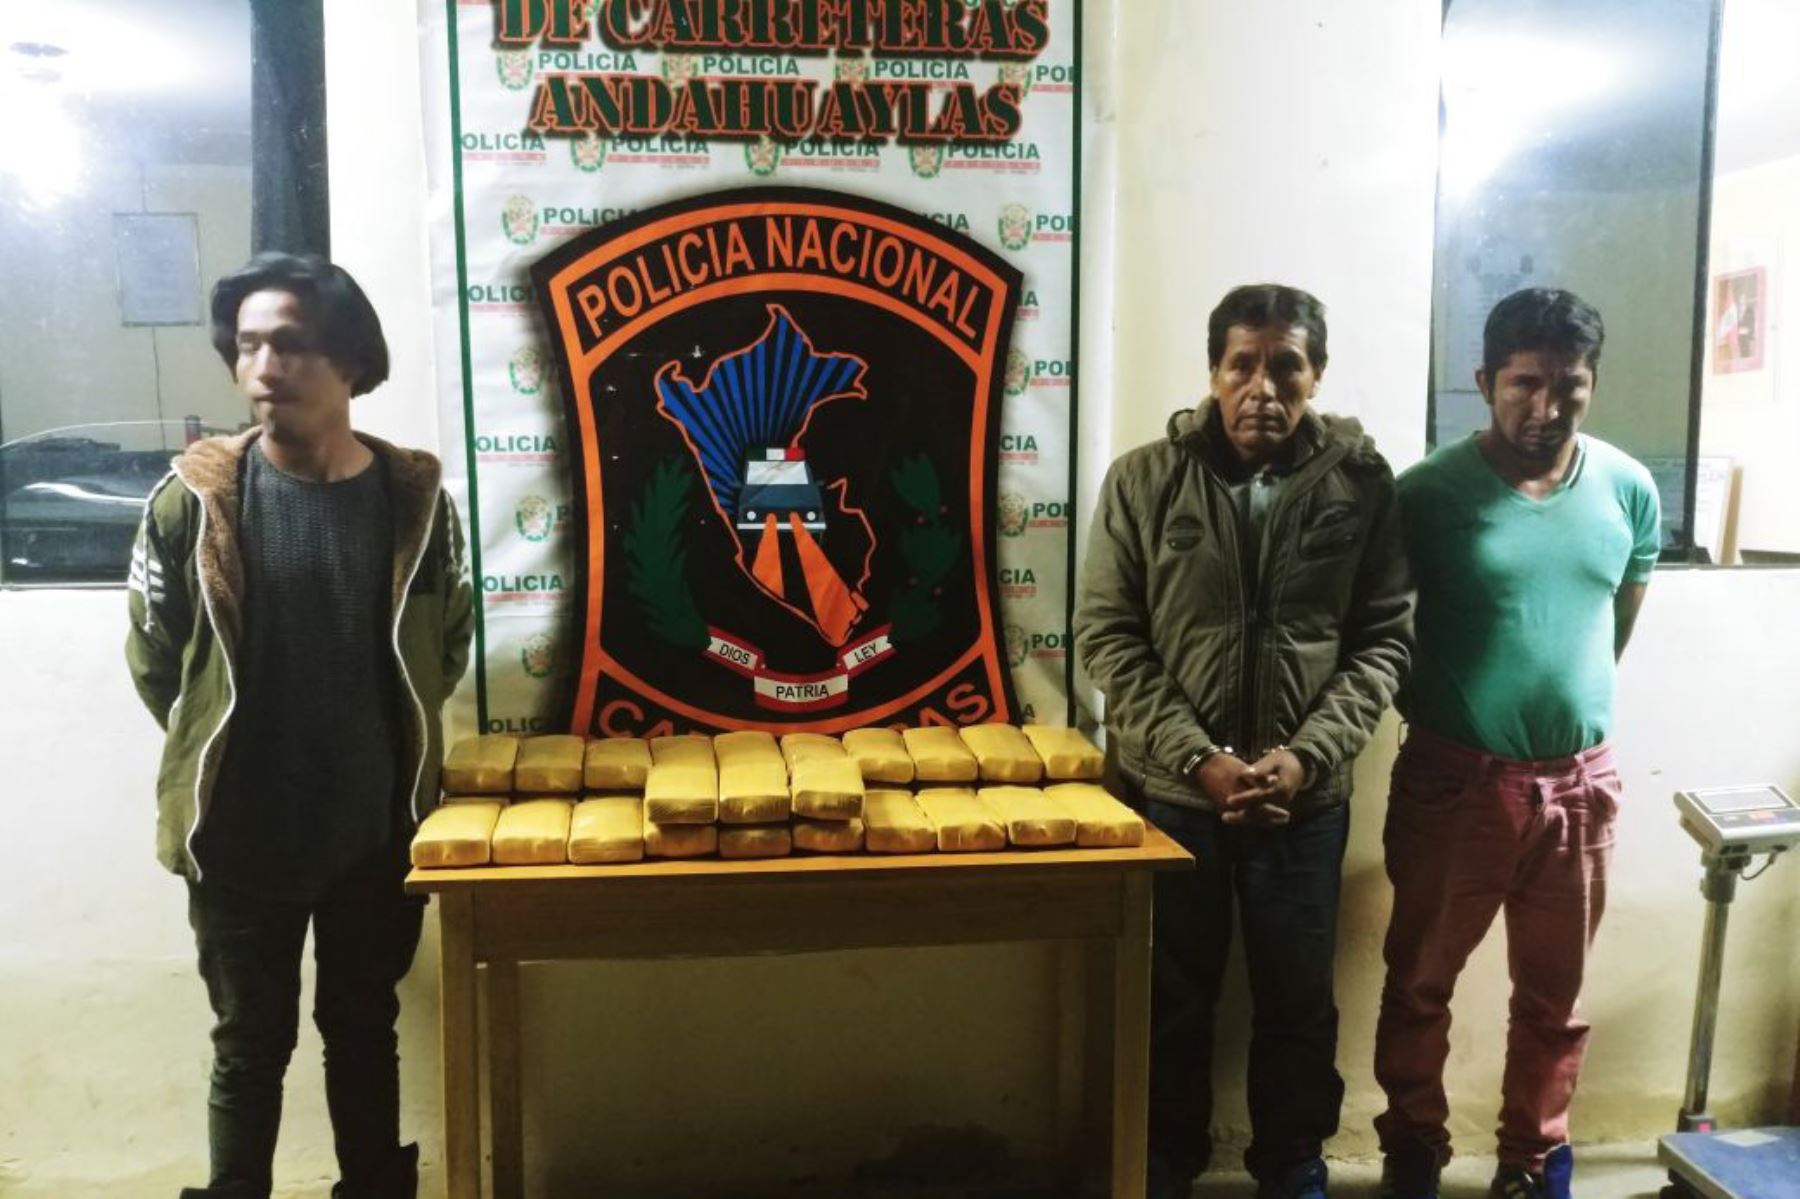 Efectivos del Destacamento de Protección de Carreteras de la Policía Nacional del Perú (Desprcar PNP) de Andahuaylas decomisaron hoy más de 33 kilos de cocaína de alta pureza y detuvieron a tres personas durante un operativo realizado en el sector Tirpa, ubicado en el kilómetro 662.5 de la vía Andahuaylas-Abancay.